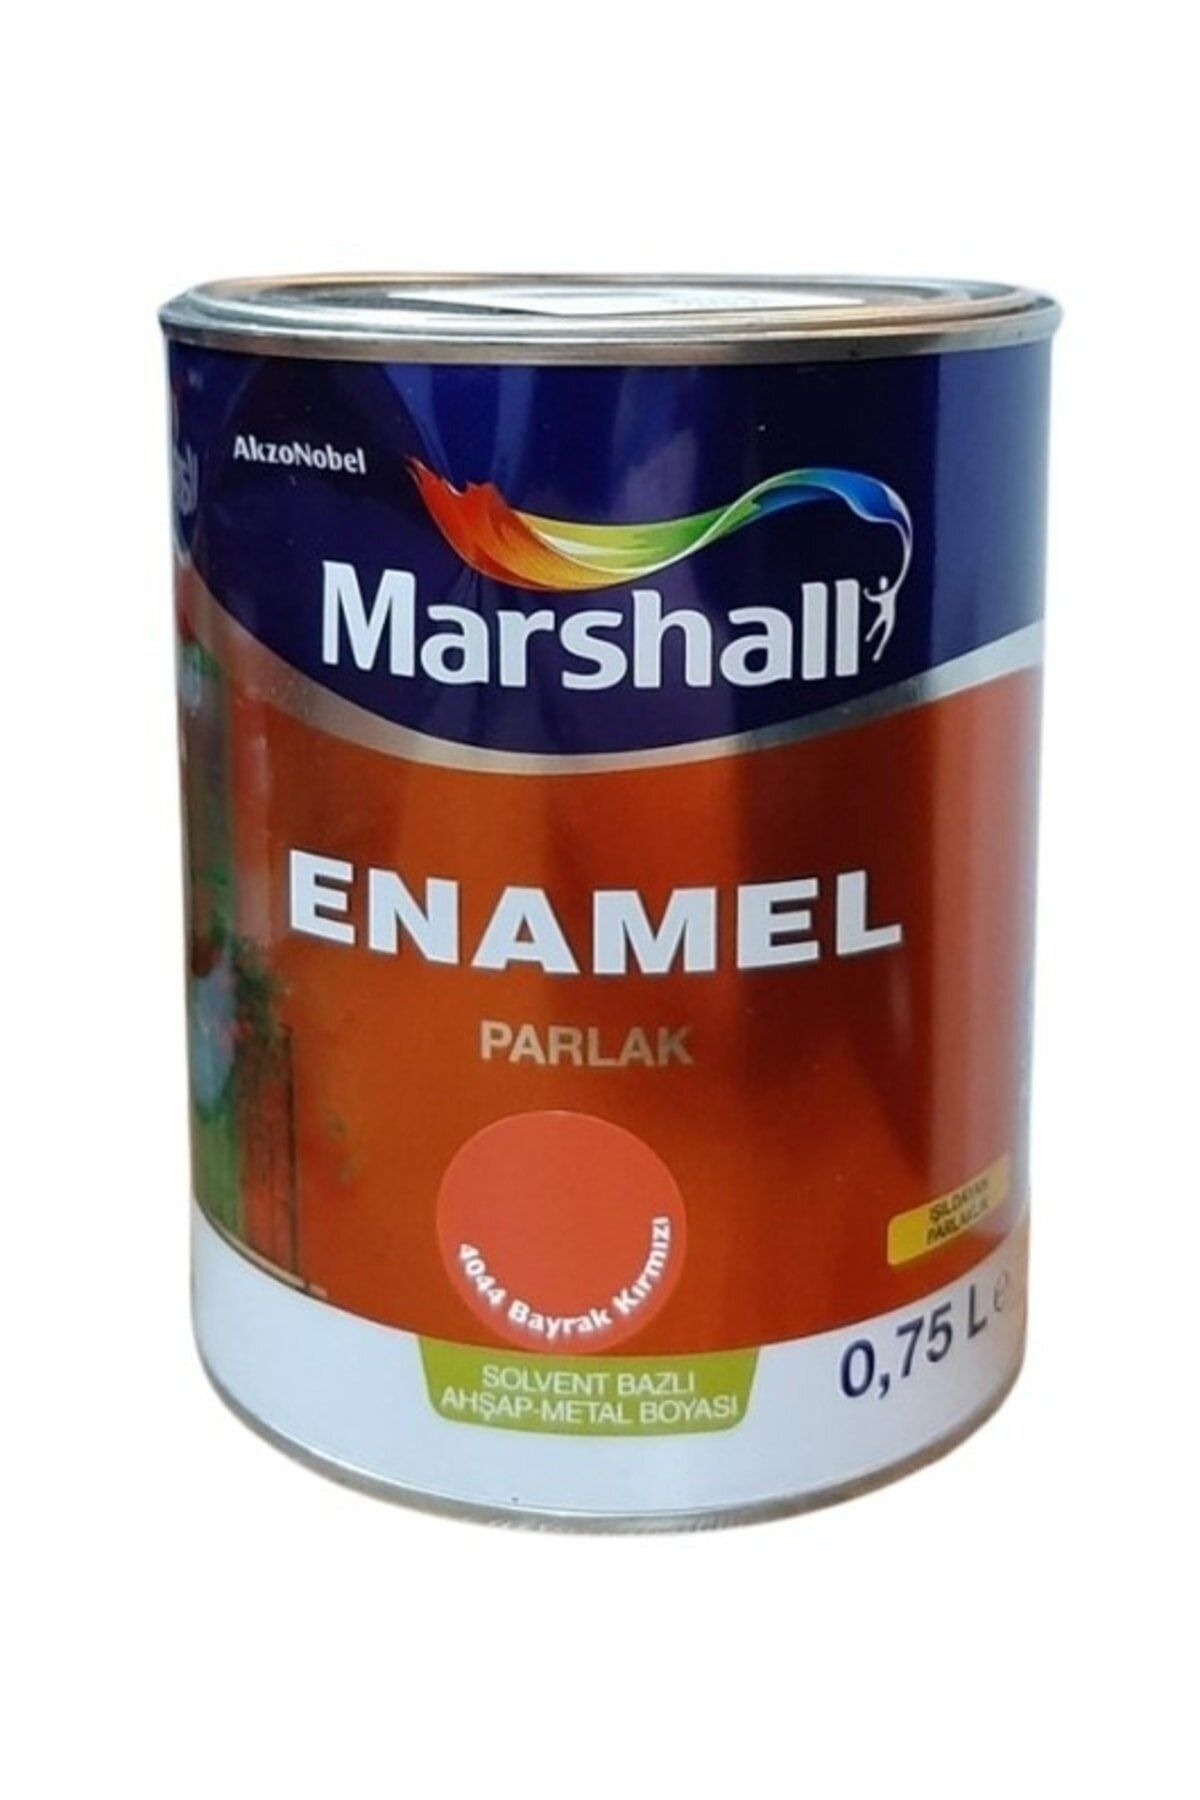 Marshall Enamel Parlak Sentetik Bayrak Kırmızı Yağlı Boya 0,75 Lt